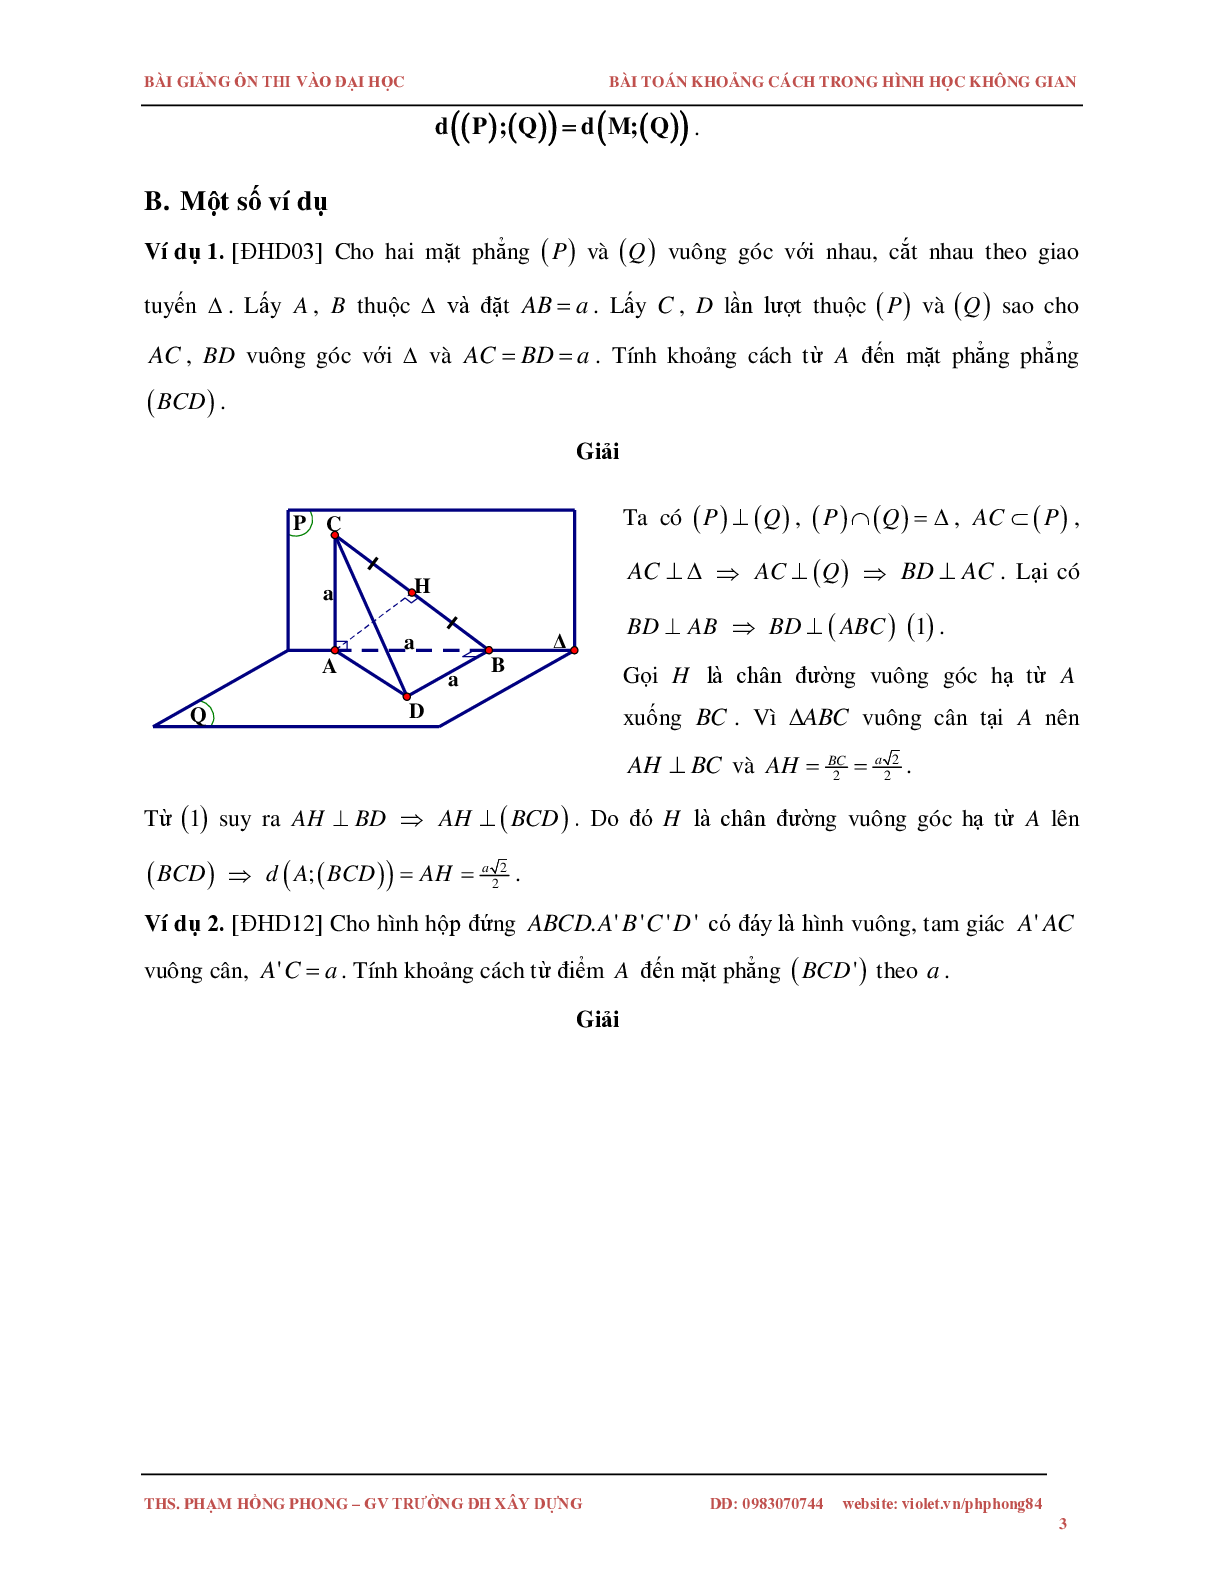 Bài toán về khoảng cách trong không gian (trang 3)